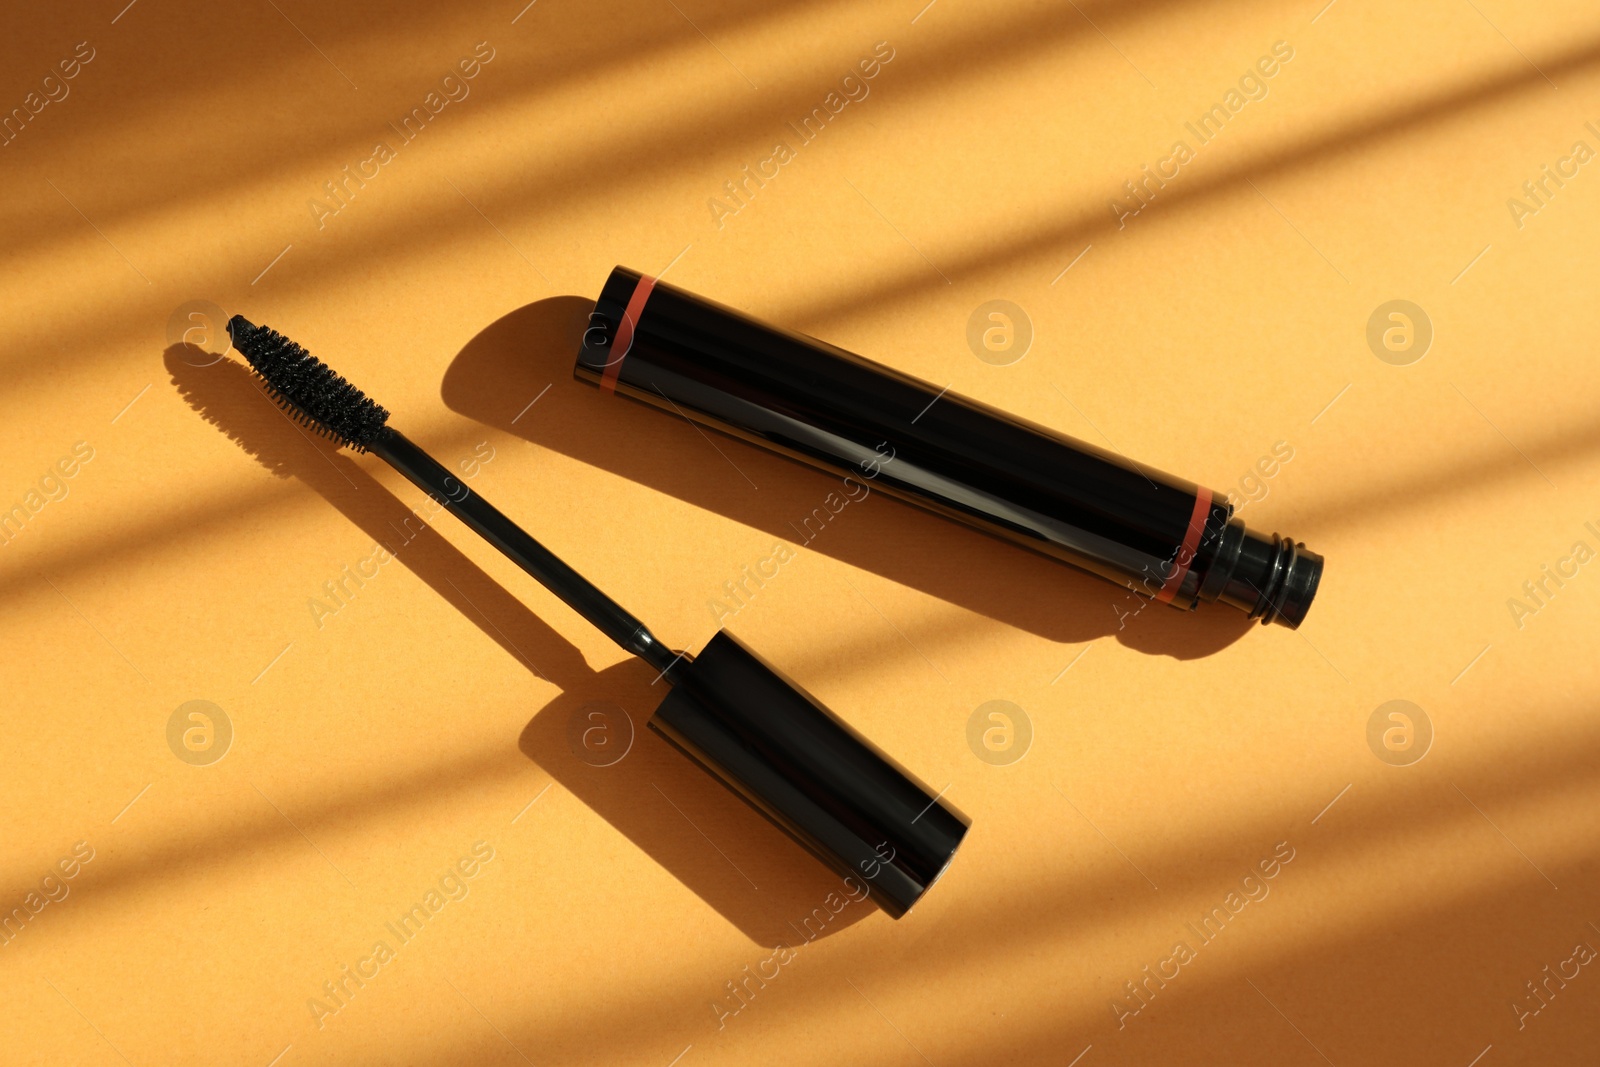 Photo of Mascara for eyelashes on orange background, flat lay. Makeup product